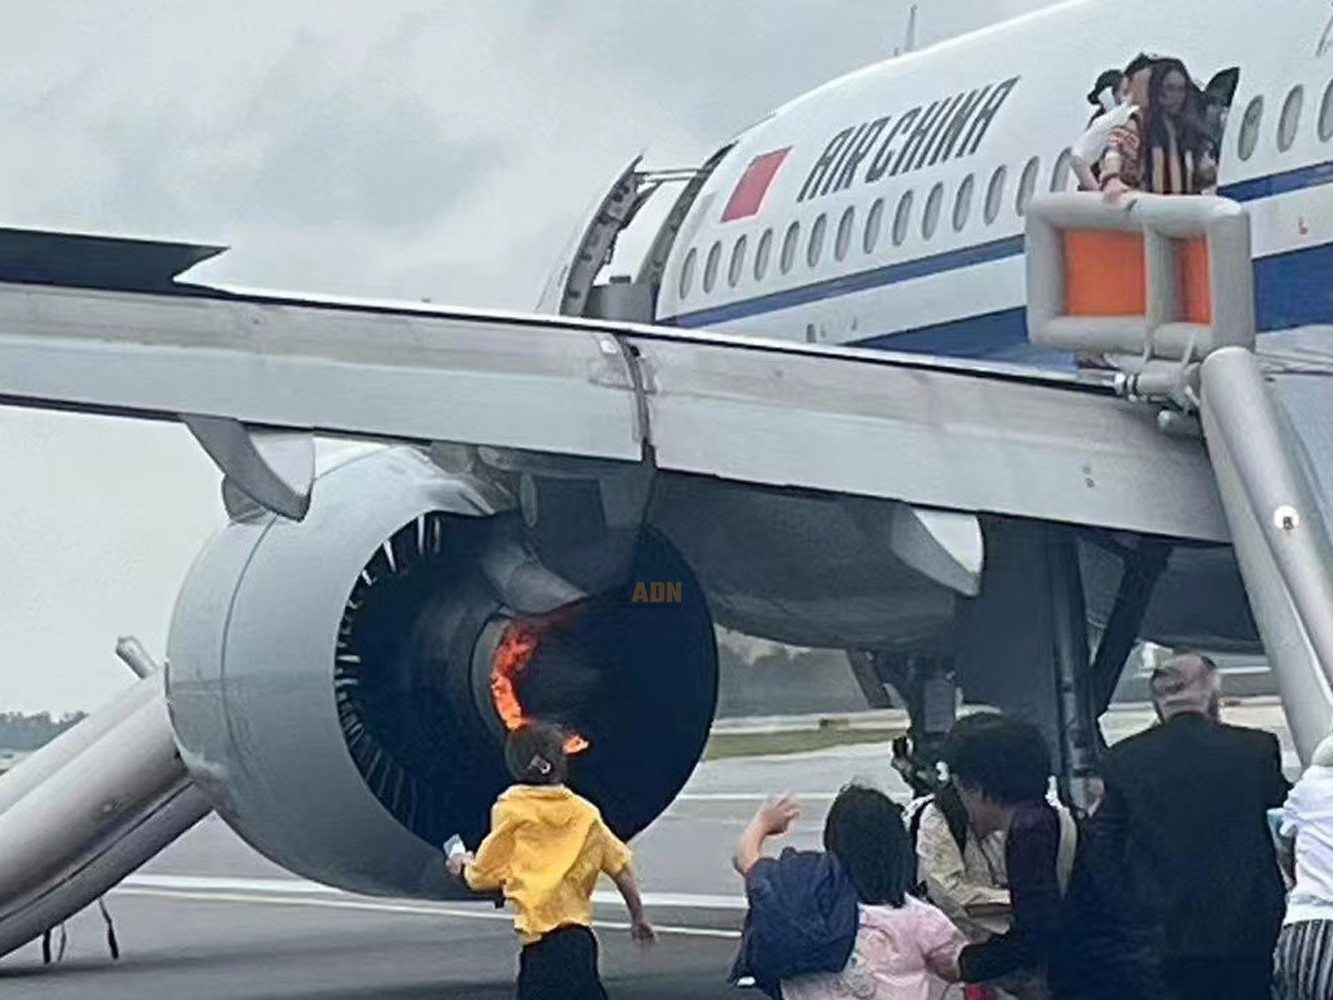 ВИДЕО: Air China компанийн Airbus A320 онгоцны хөдөлгүүр шатаж Сингапурт ослын буулт хийжээ